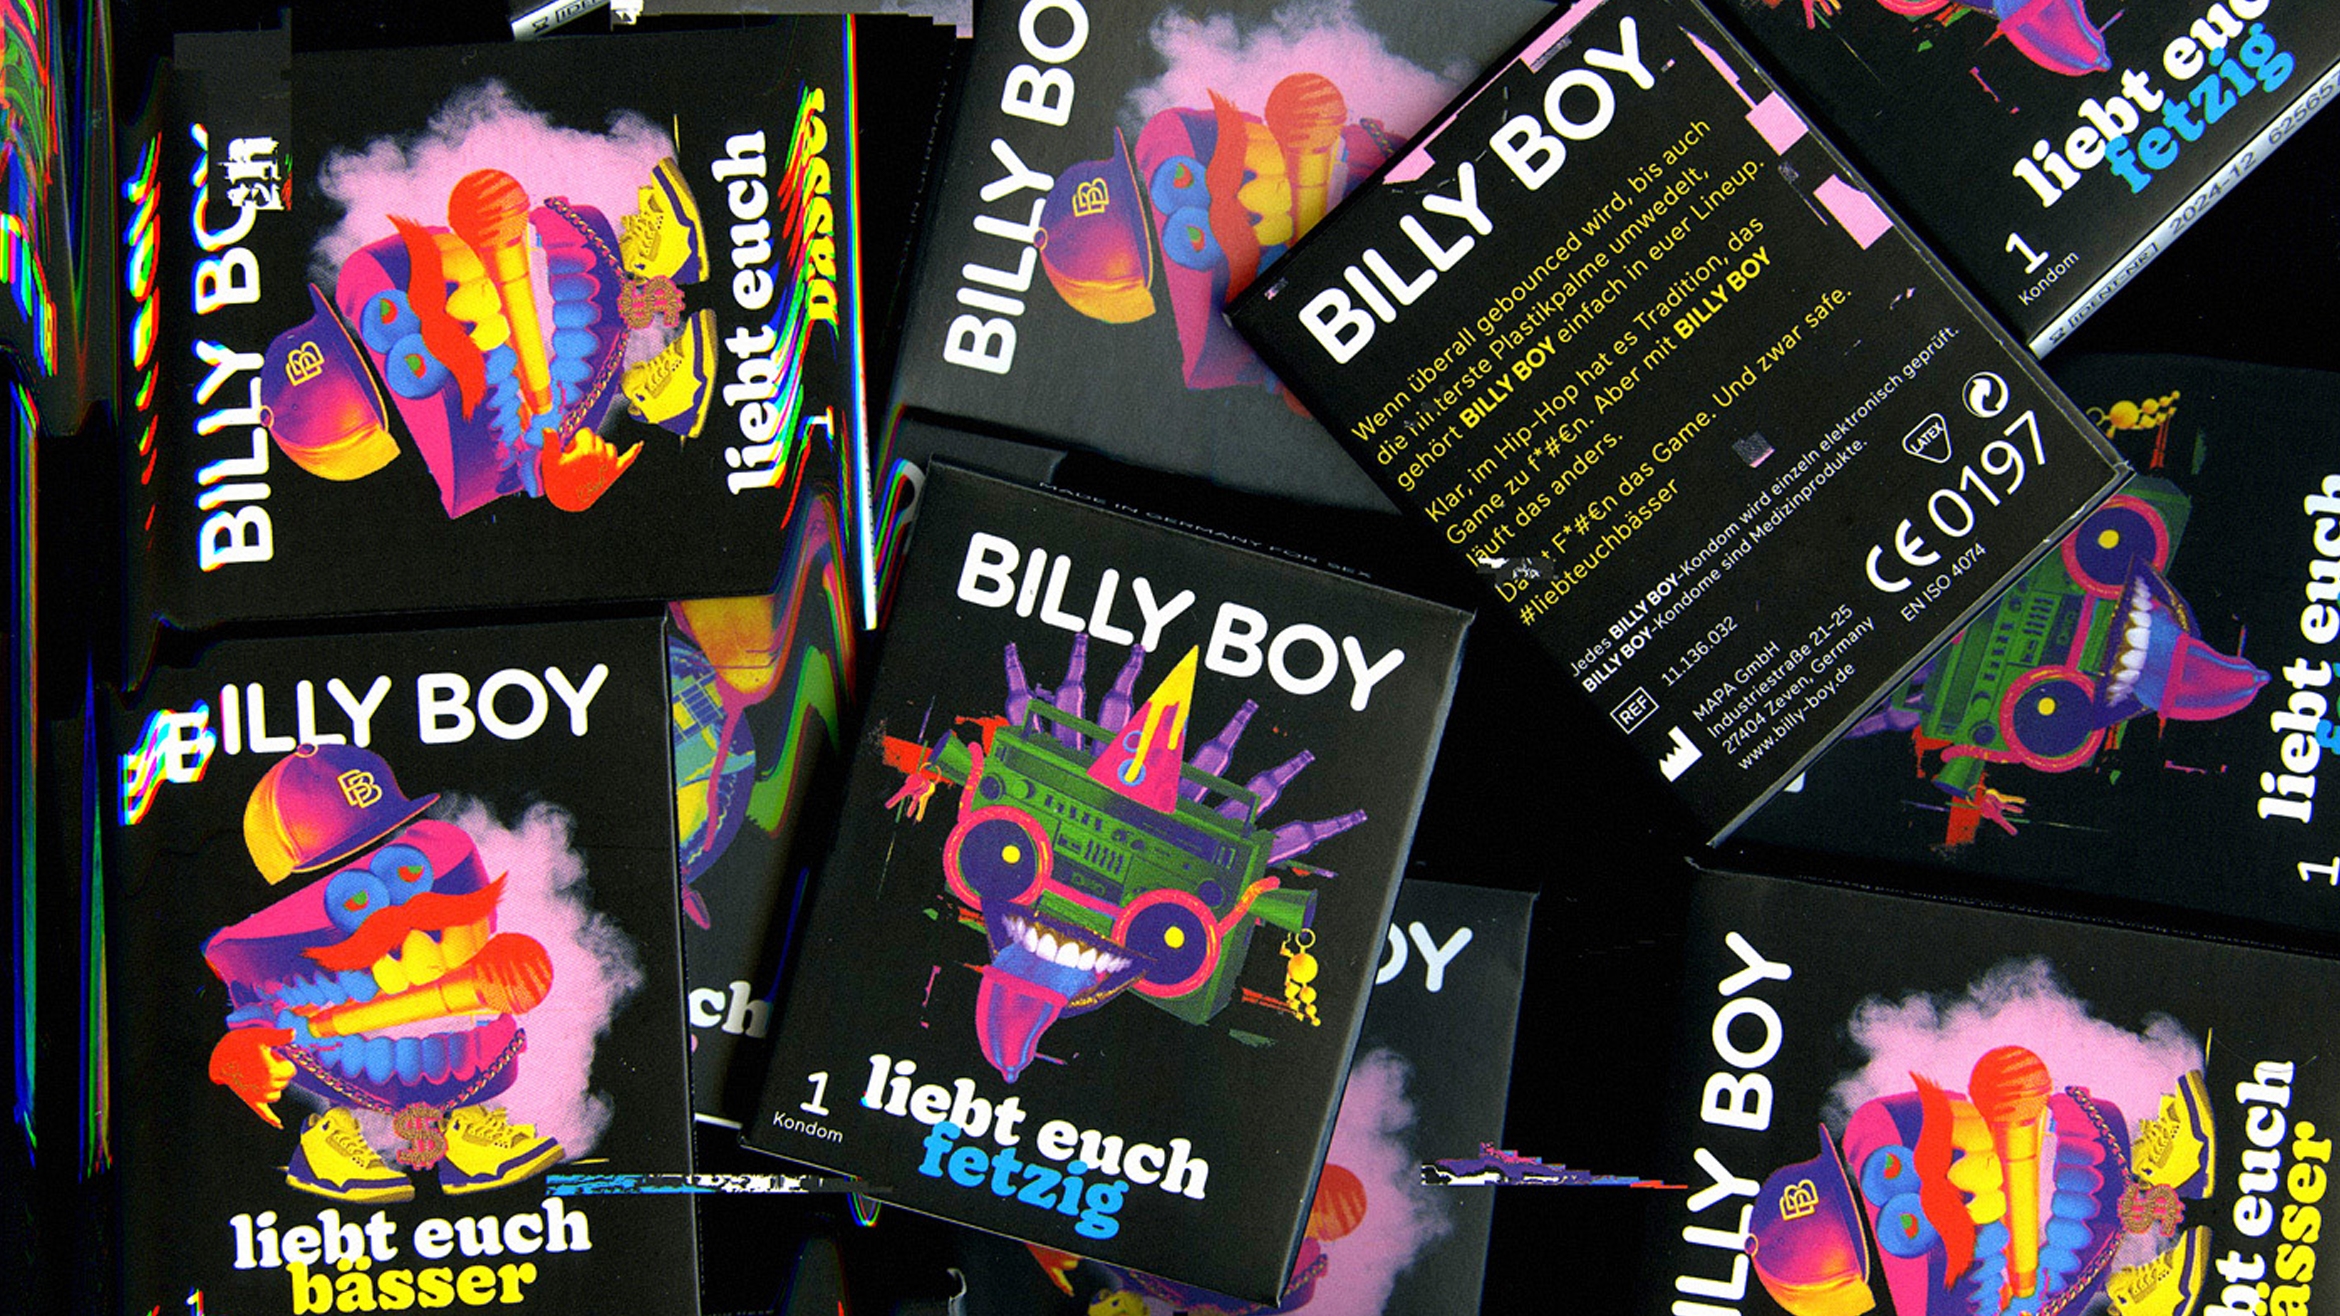 Wimmelbilder, bunte Verpackungen und Anzeigen: Billy Boy treibt es mal wieder sehr bunt –